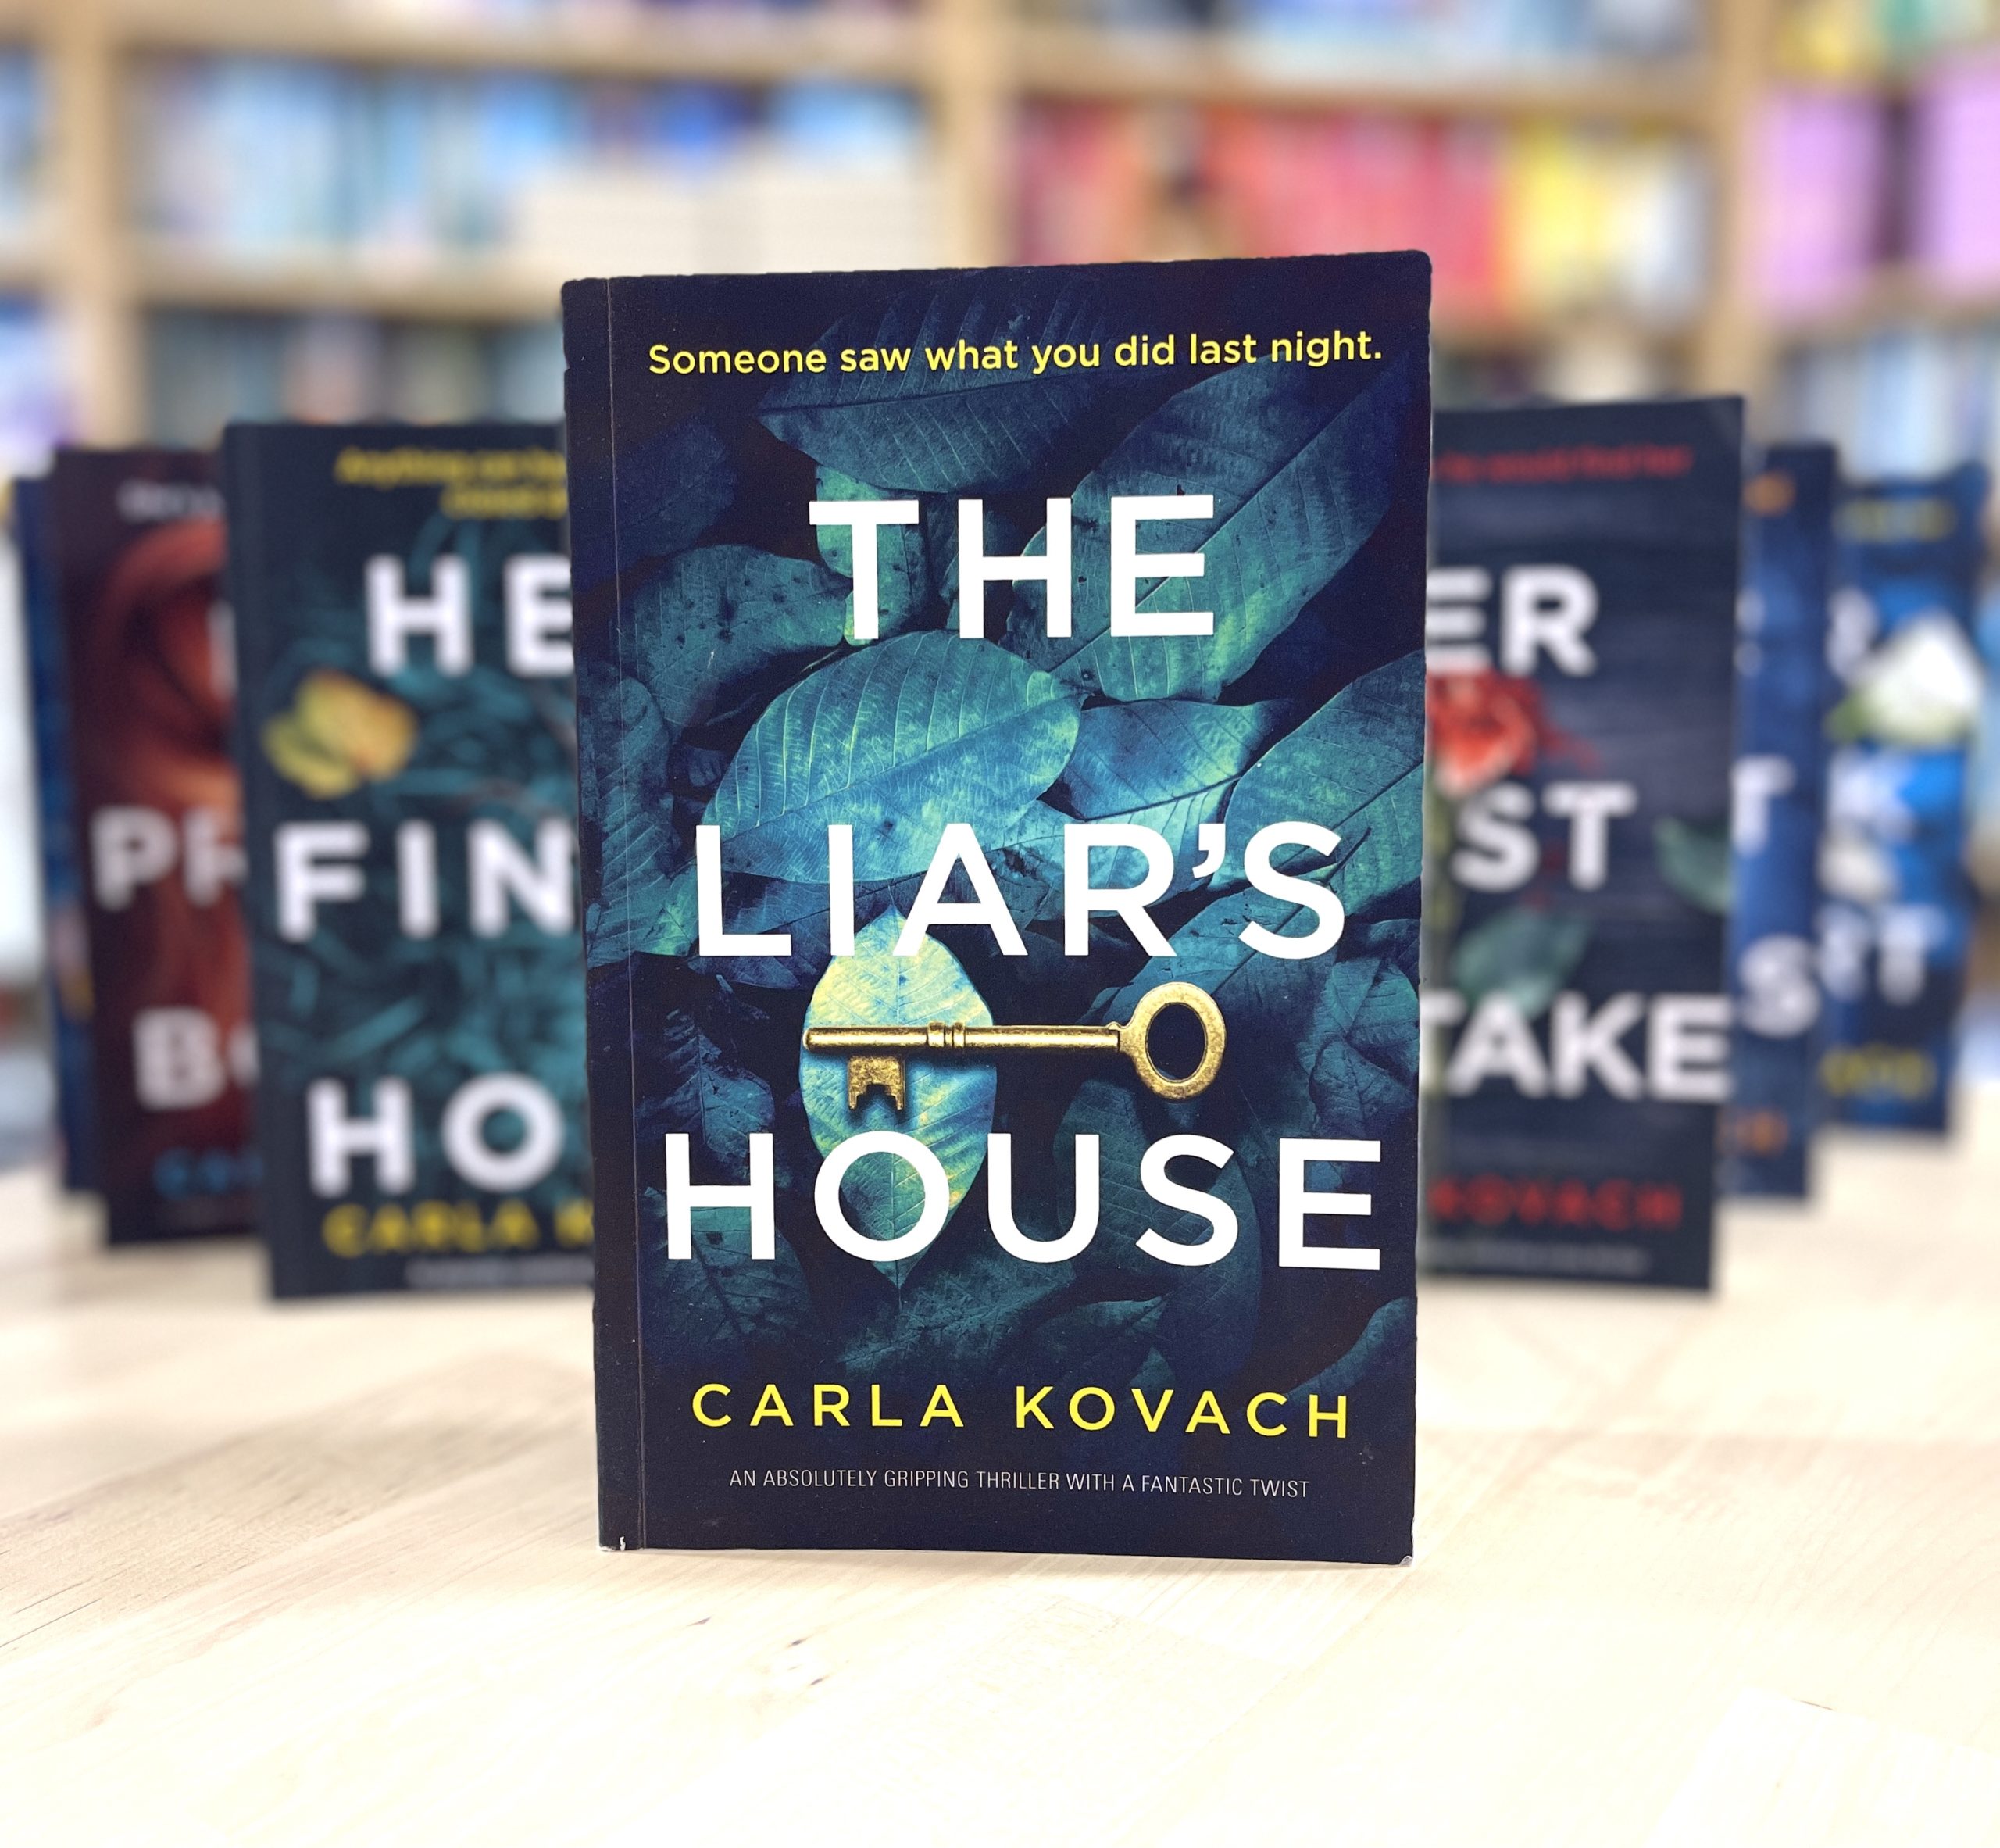 The Liar's House Carla kovach Book 4